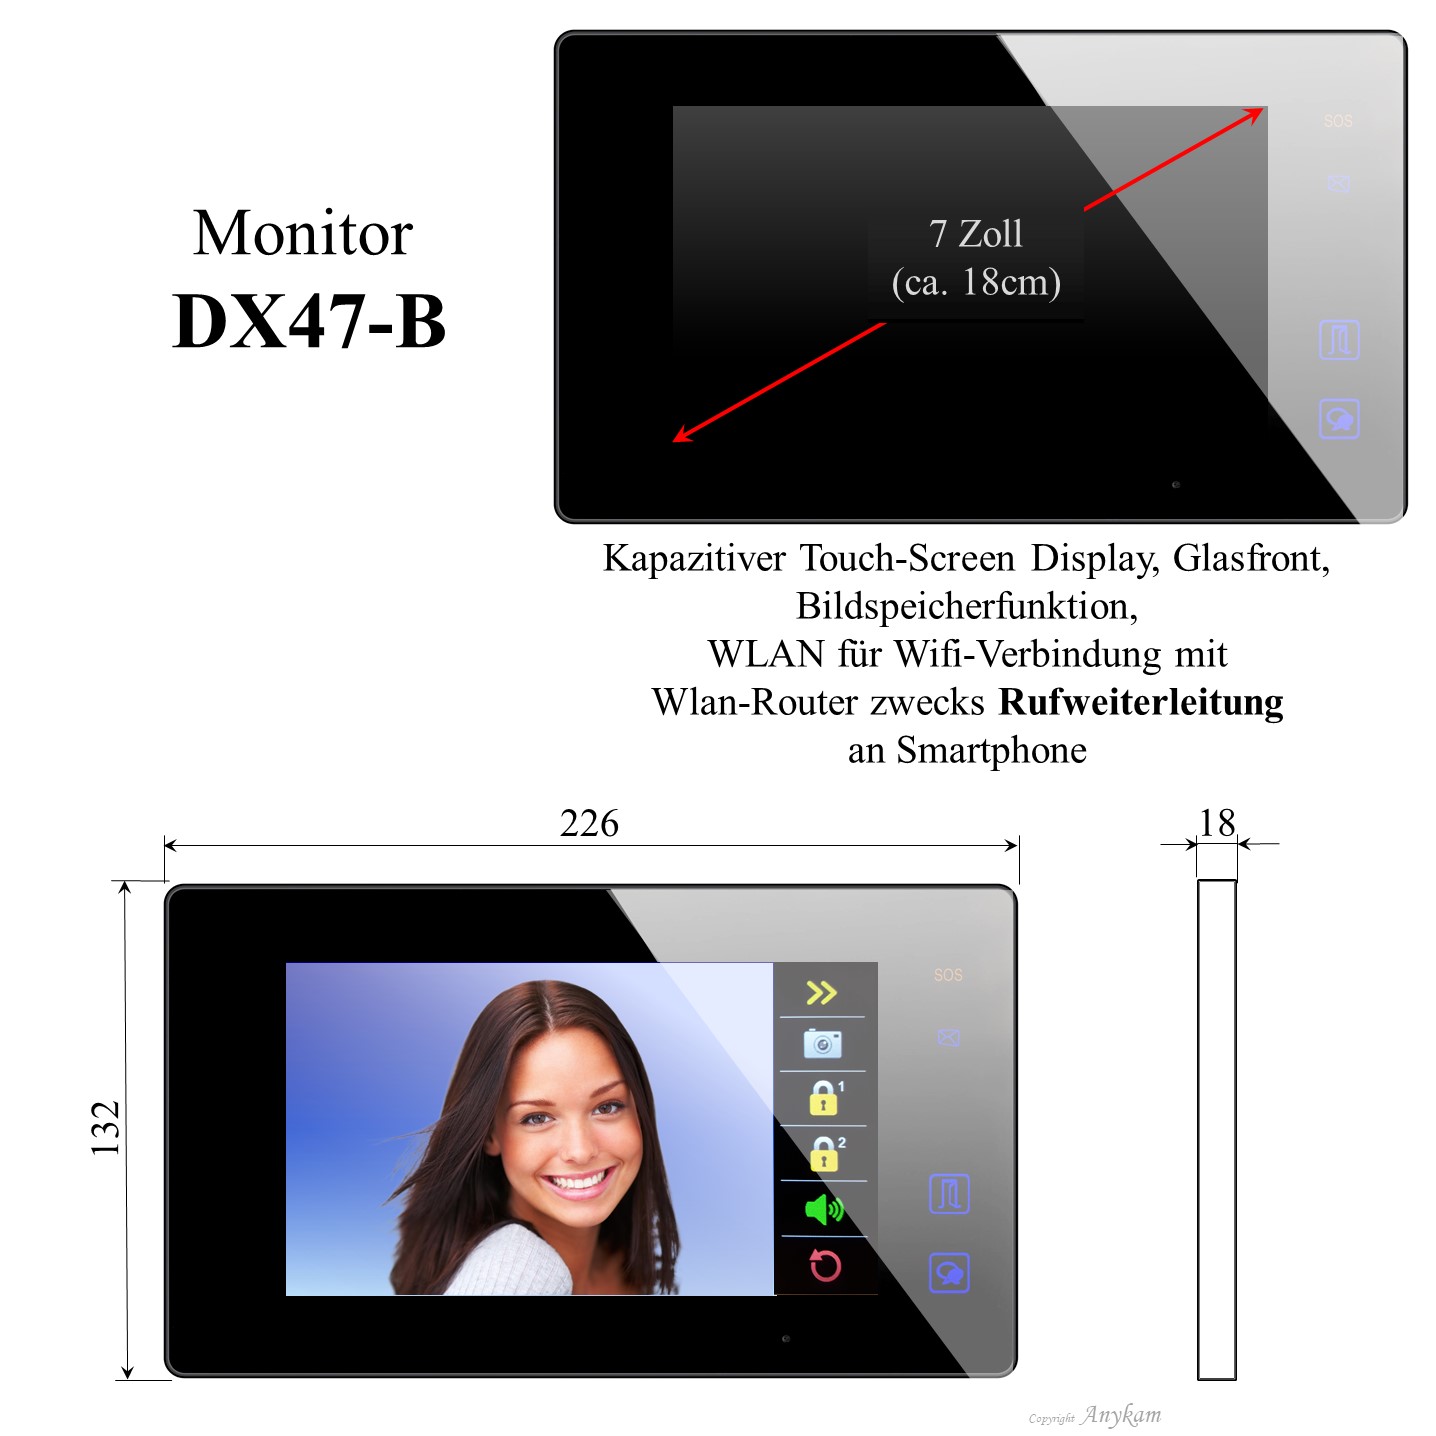 Monitor DX47-B, Innenstation der Videosprechanlage mit 2Draht Technik